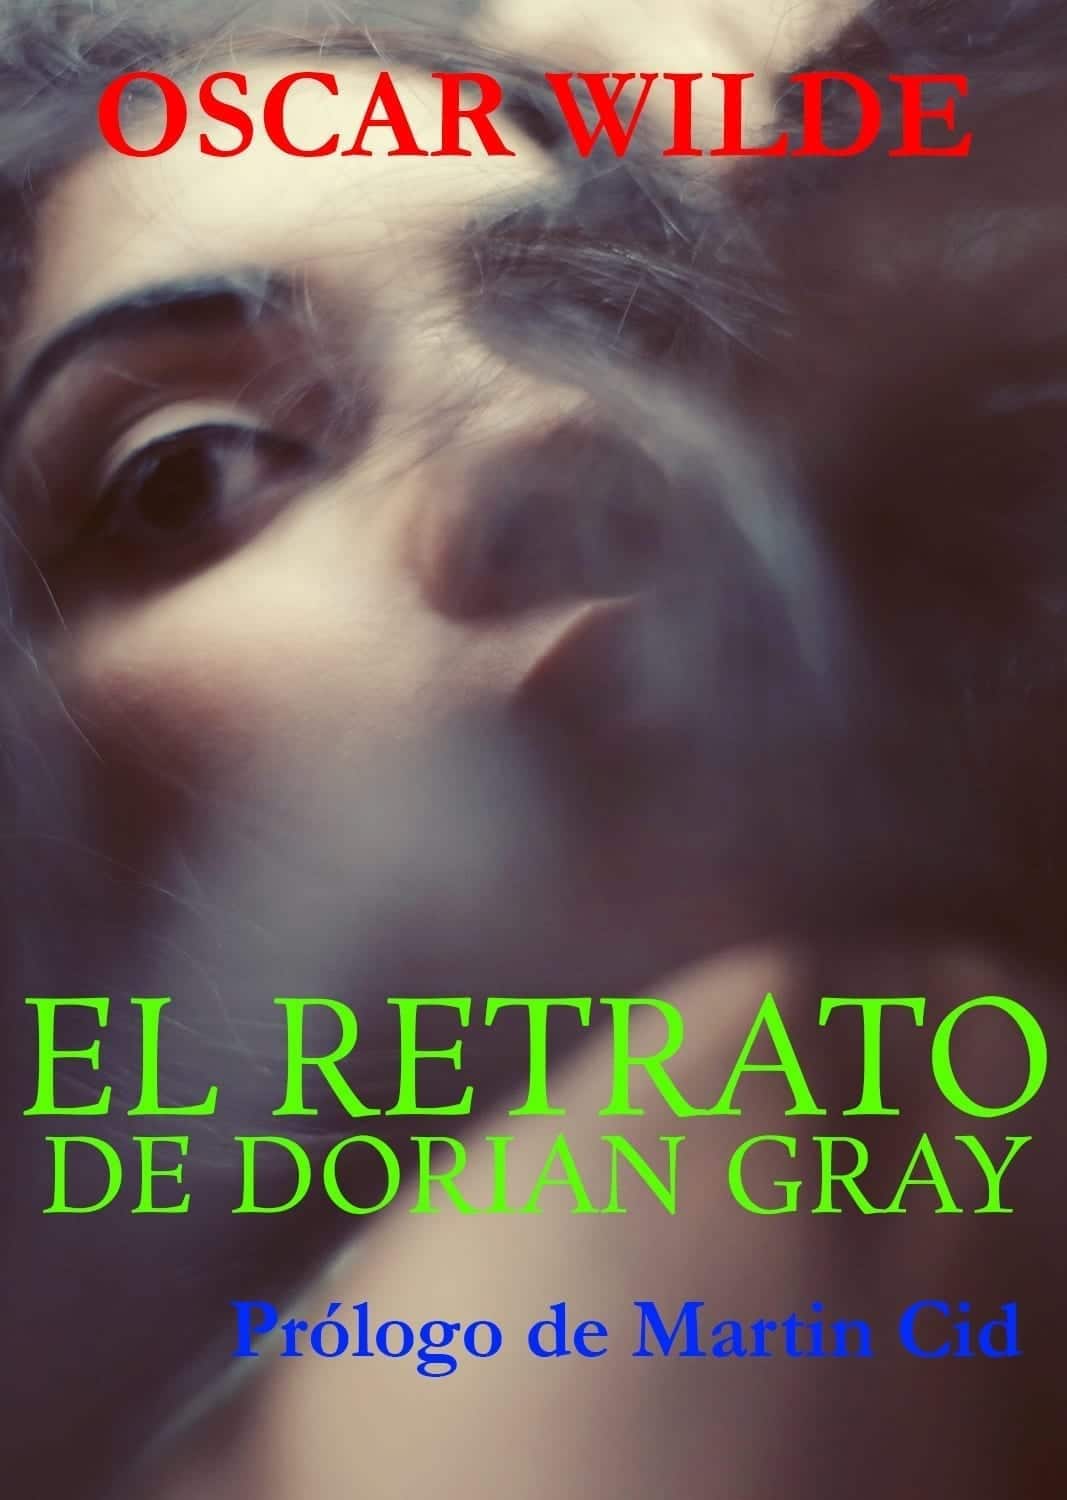 El Retrato de Dorian Gray. Oscar Wilde